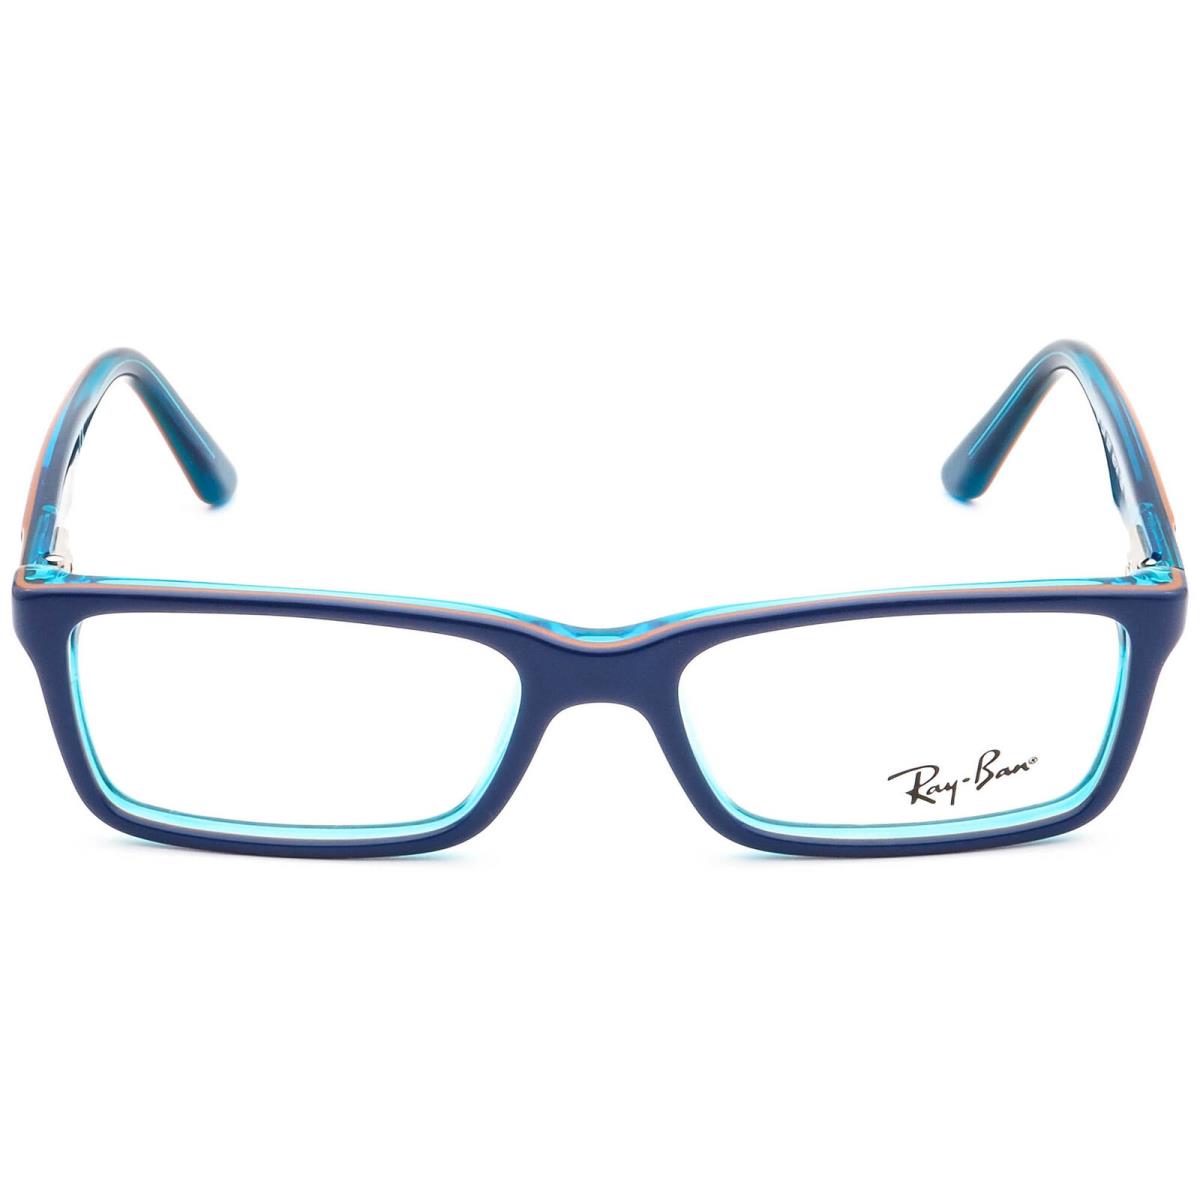 Ray-ban Kids` Eyeglasses RB 1534 3587 Blue Rectangular Frame 46 14 125